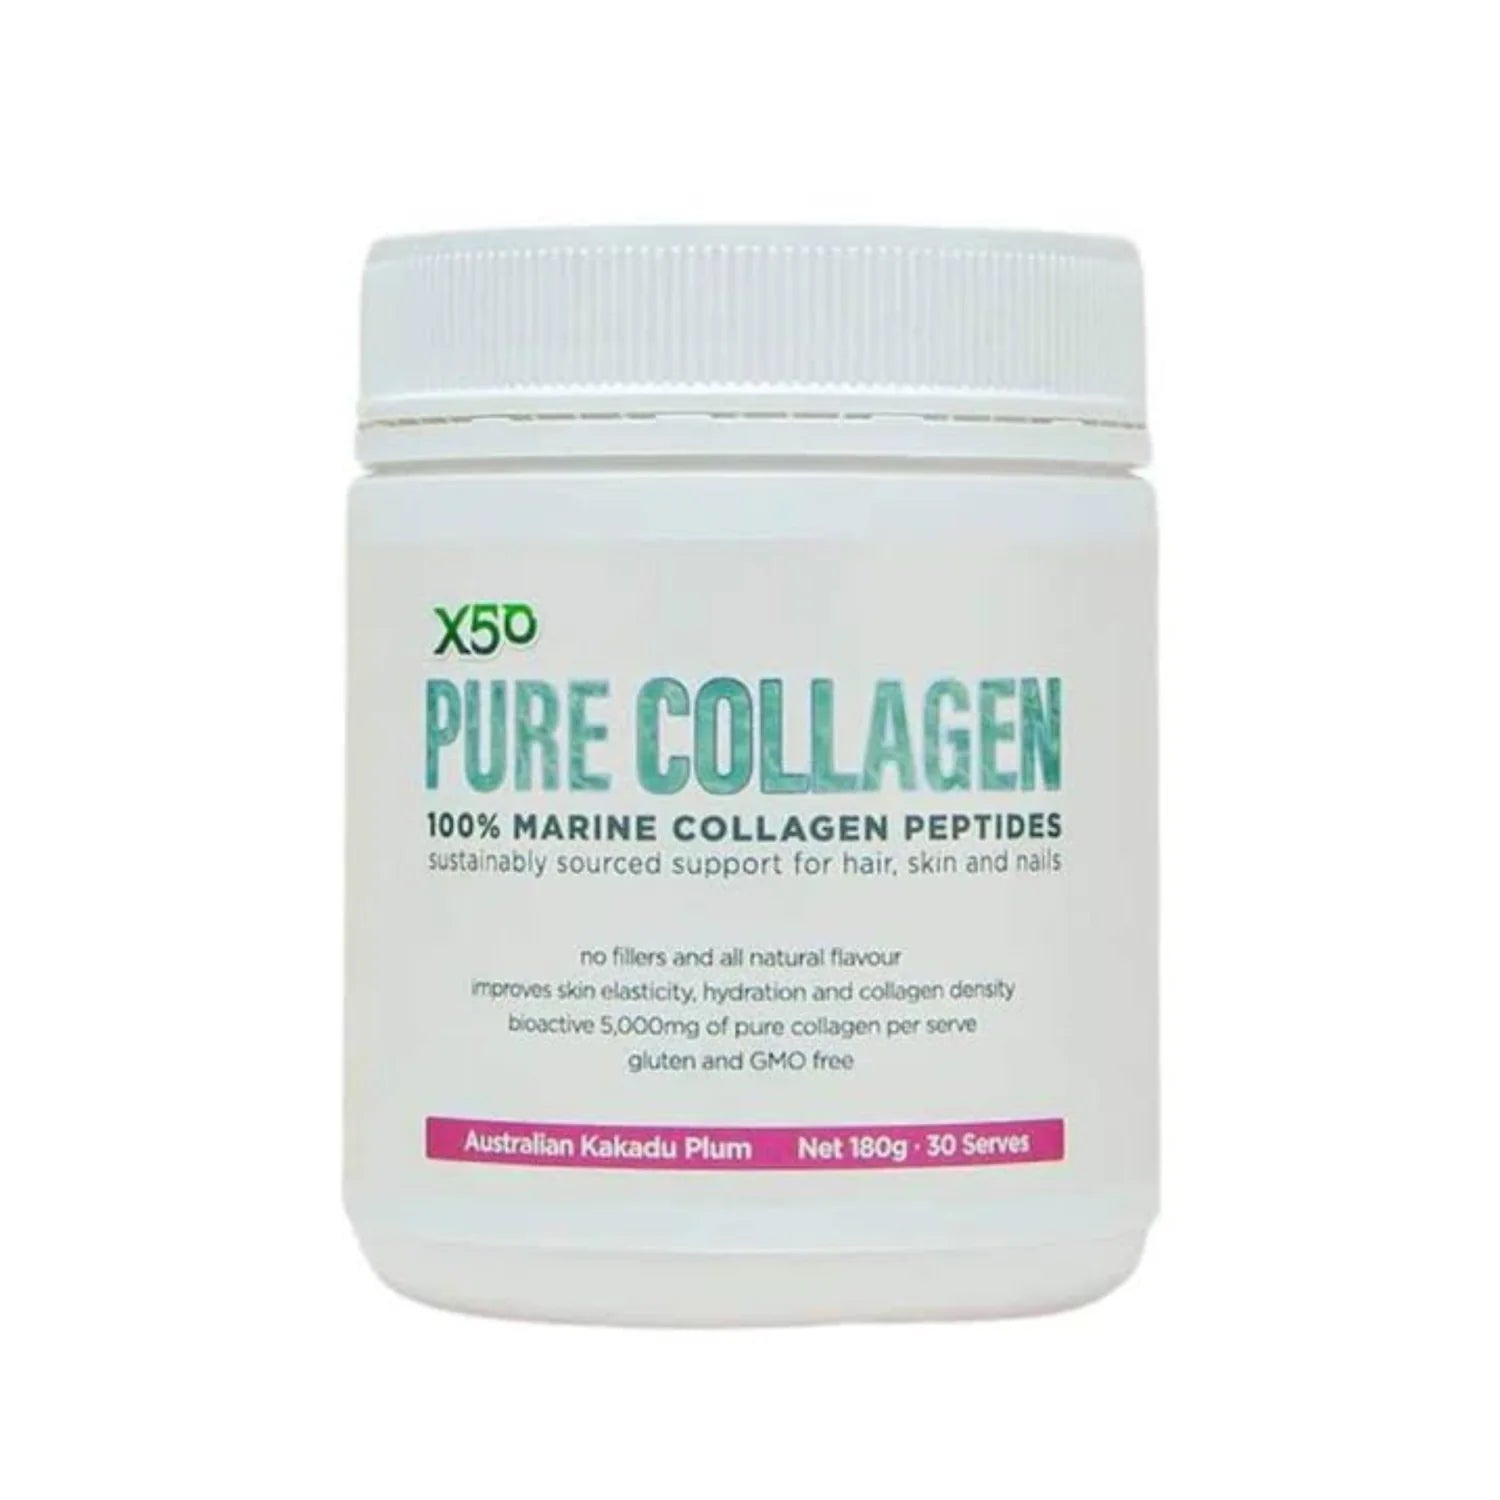 X50 Pure Collagen - Plum